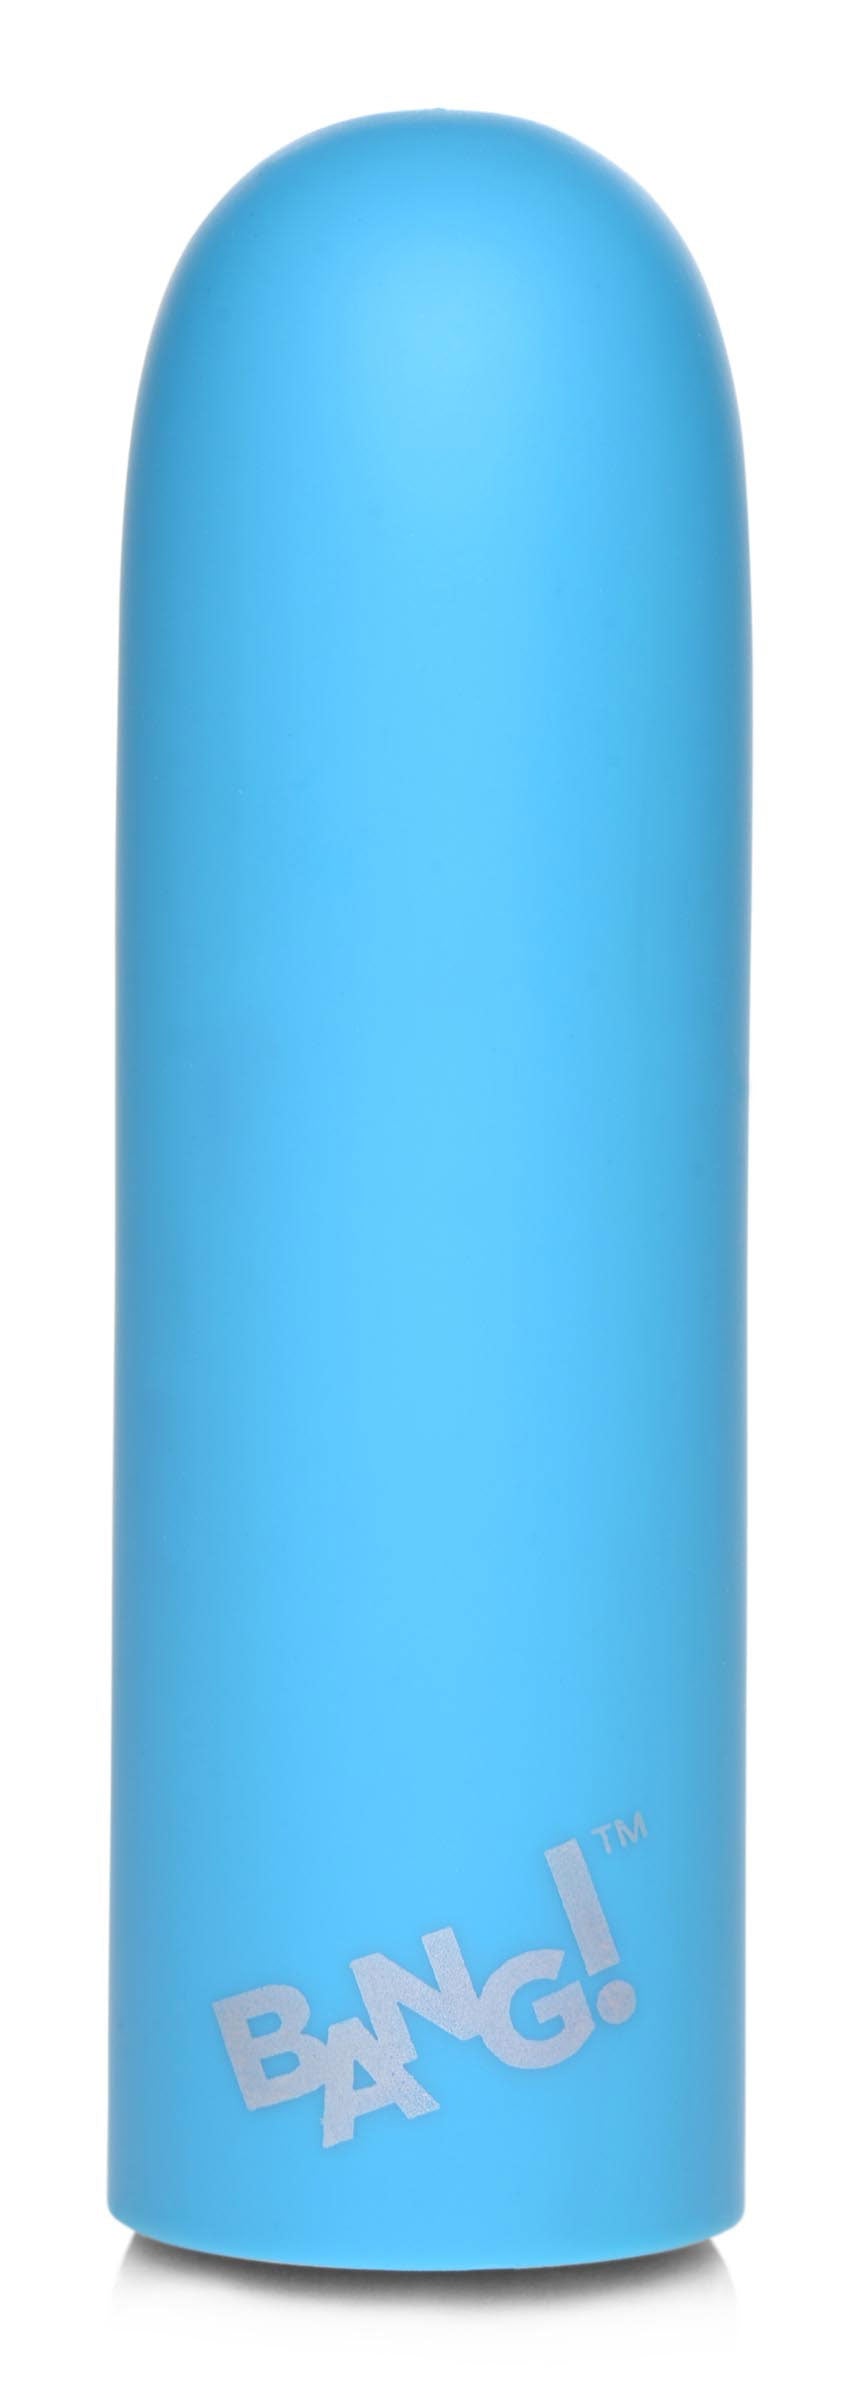 10x Mega Vibrator - Blue BNG-AG749-BLUE